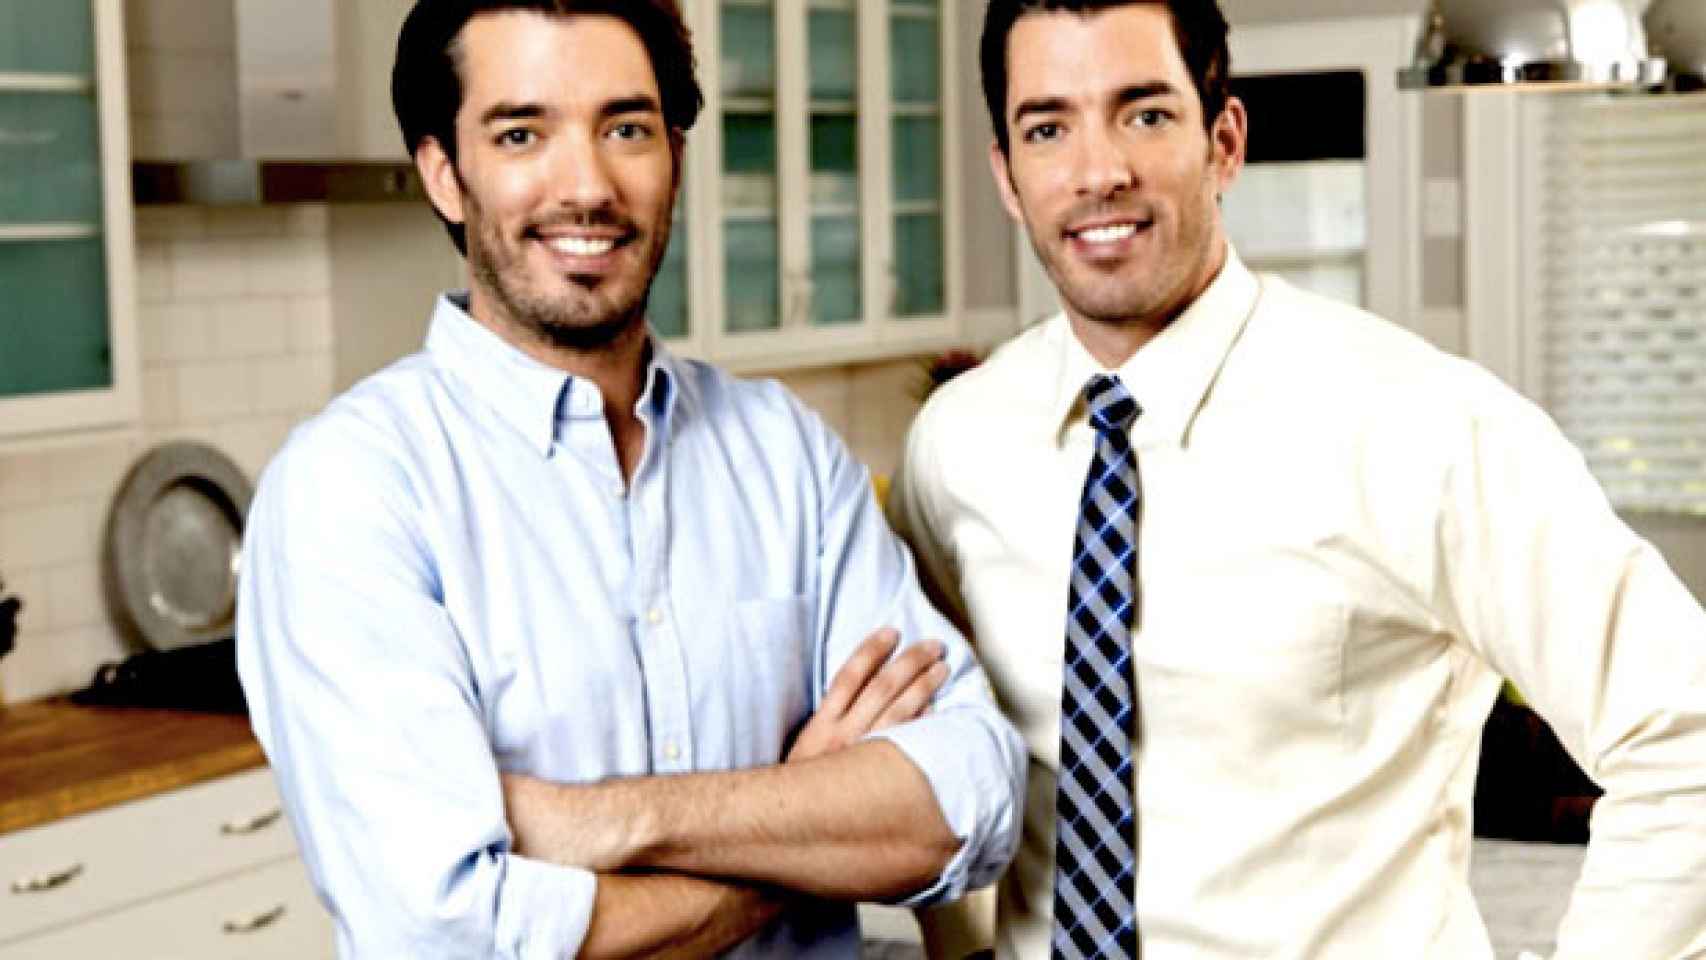 Drew y Jonathan Scott, los gemelos famosos en todo el mundo gracias al programa televisivo 'La casa de mis sueños' / CG